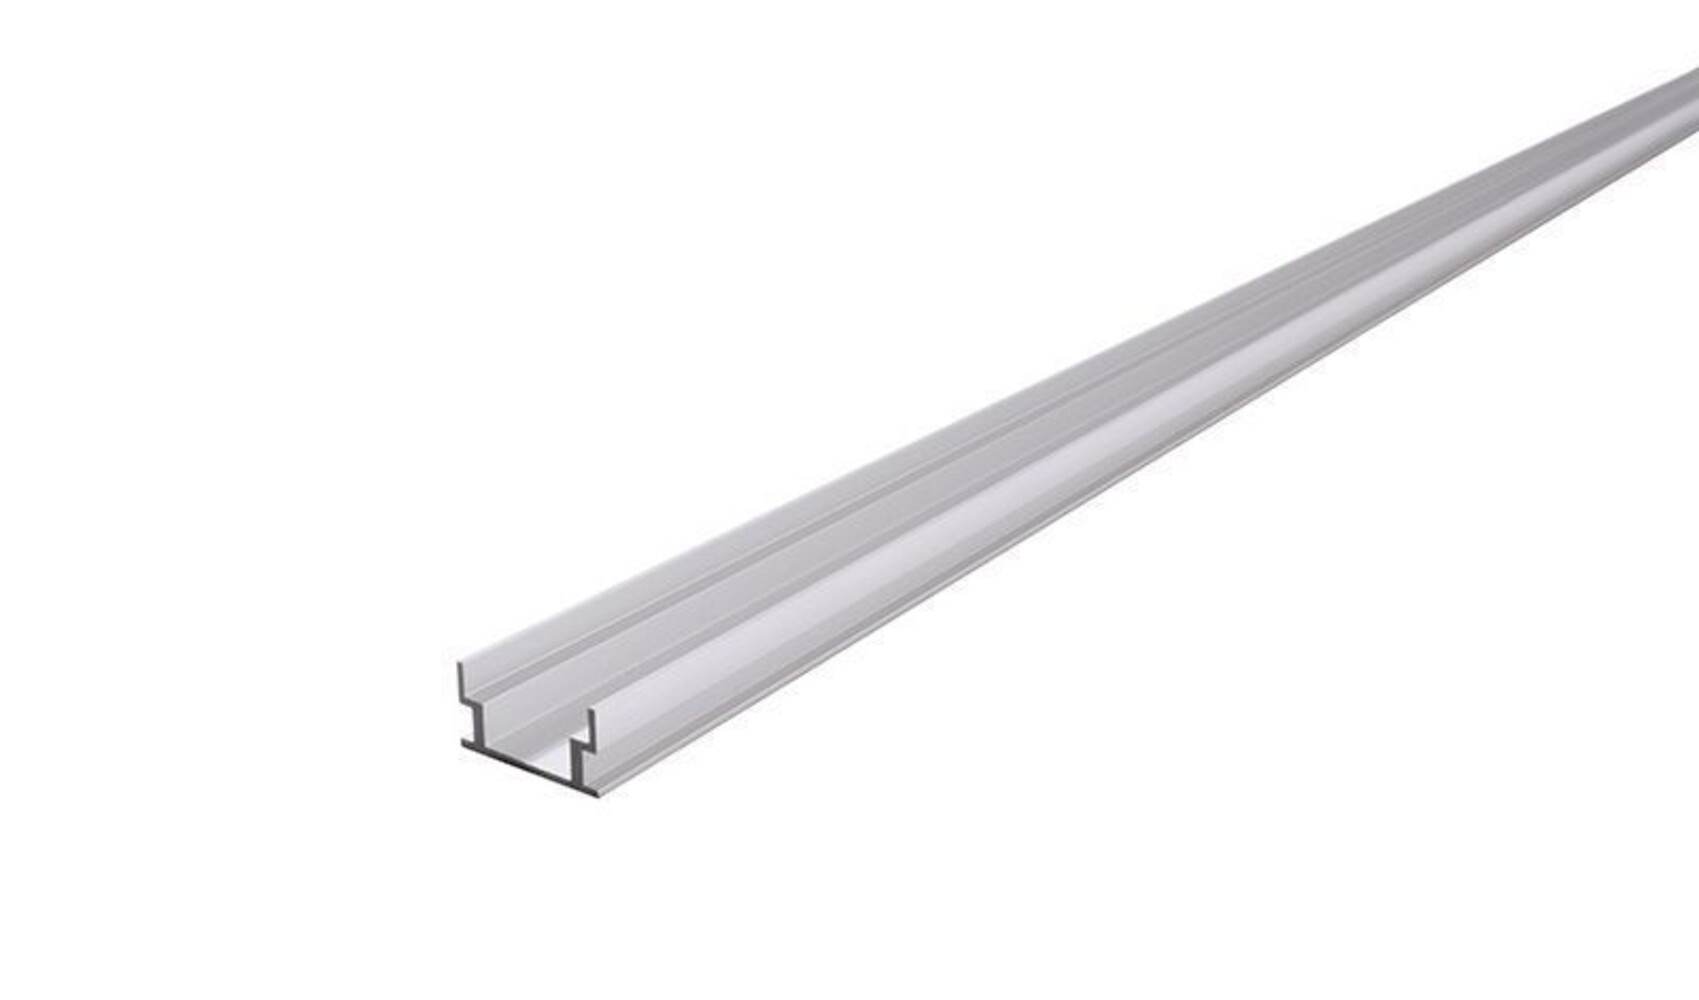 Deko-Light LED Profil in silber matt eloxiert für 12-13.3 mm LED Stripes